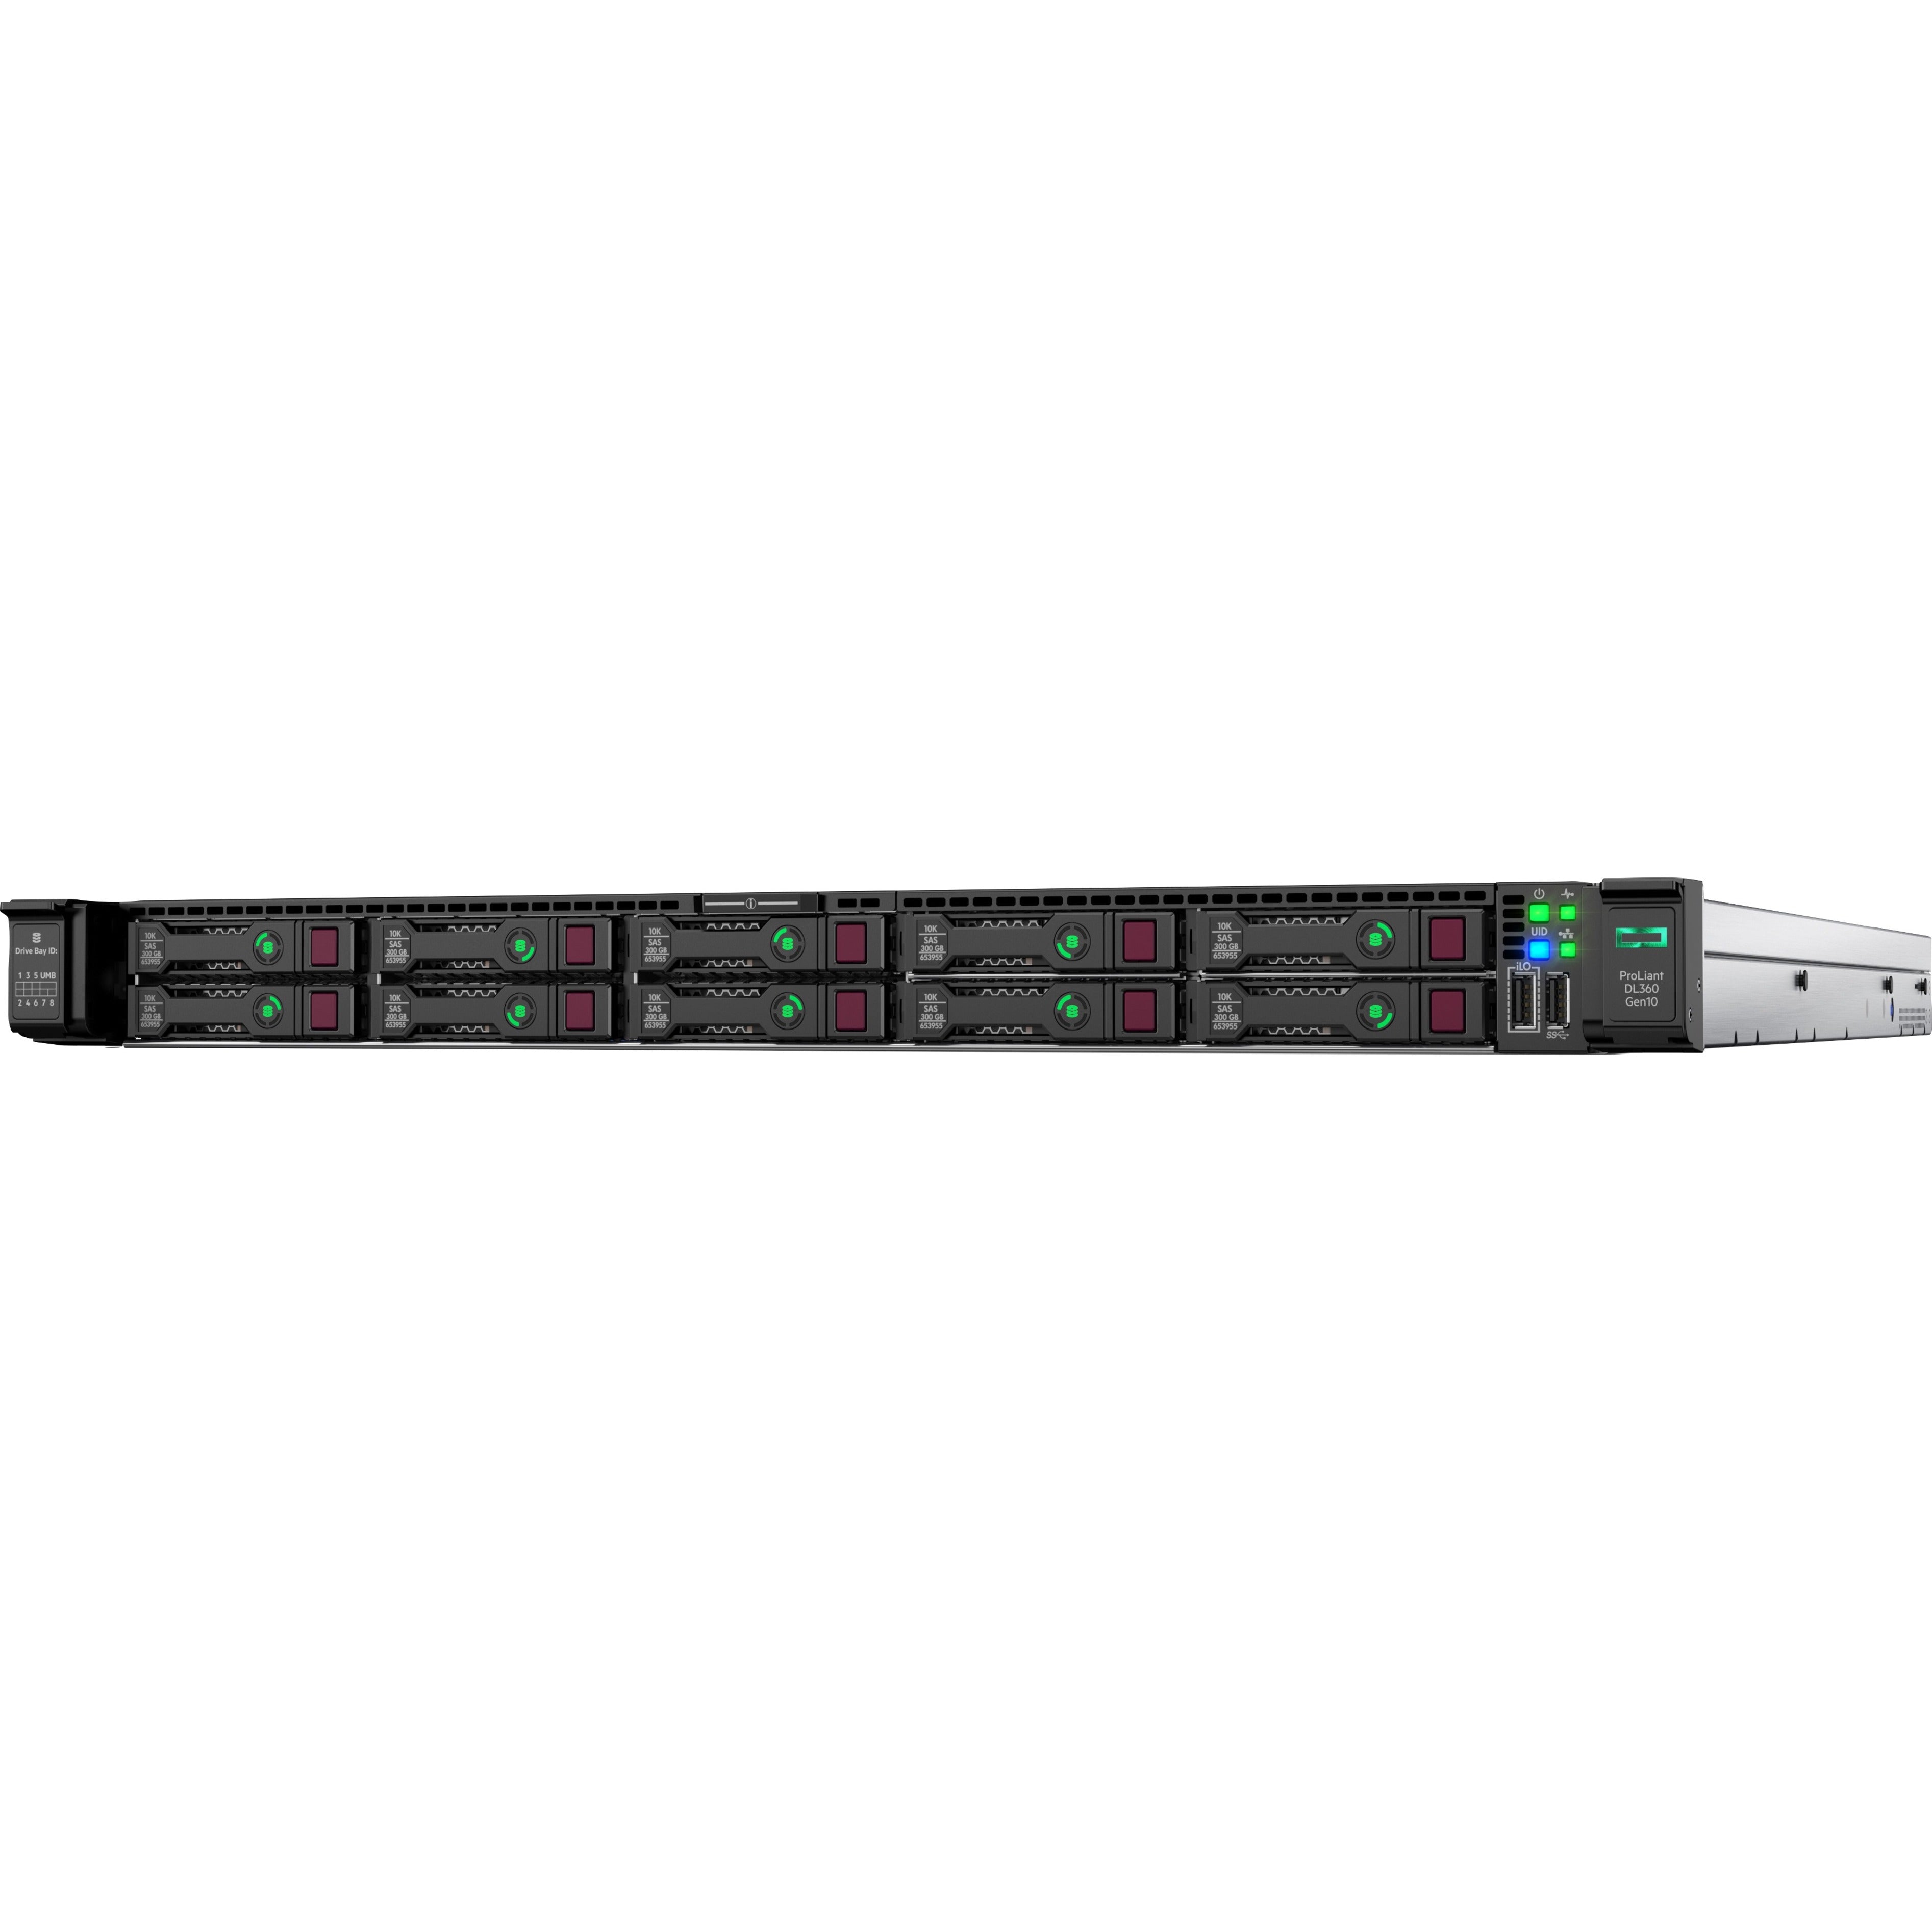 HPE P24744-B21 ProLiant DL360 Gen10 6250 1P 32GB Server, Octa-core, 10 Gigabit Ethernet